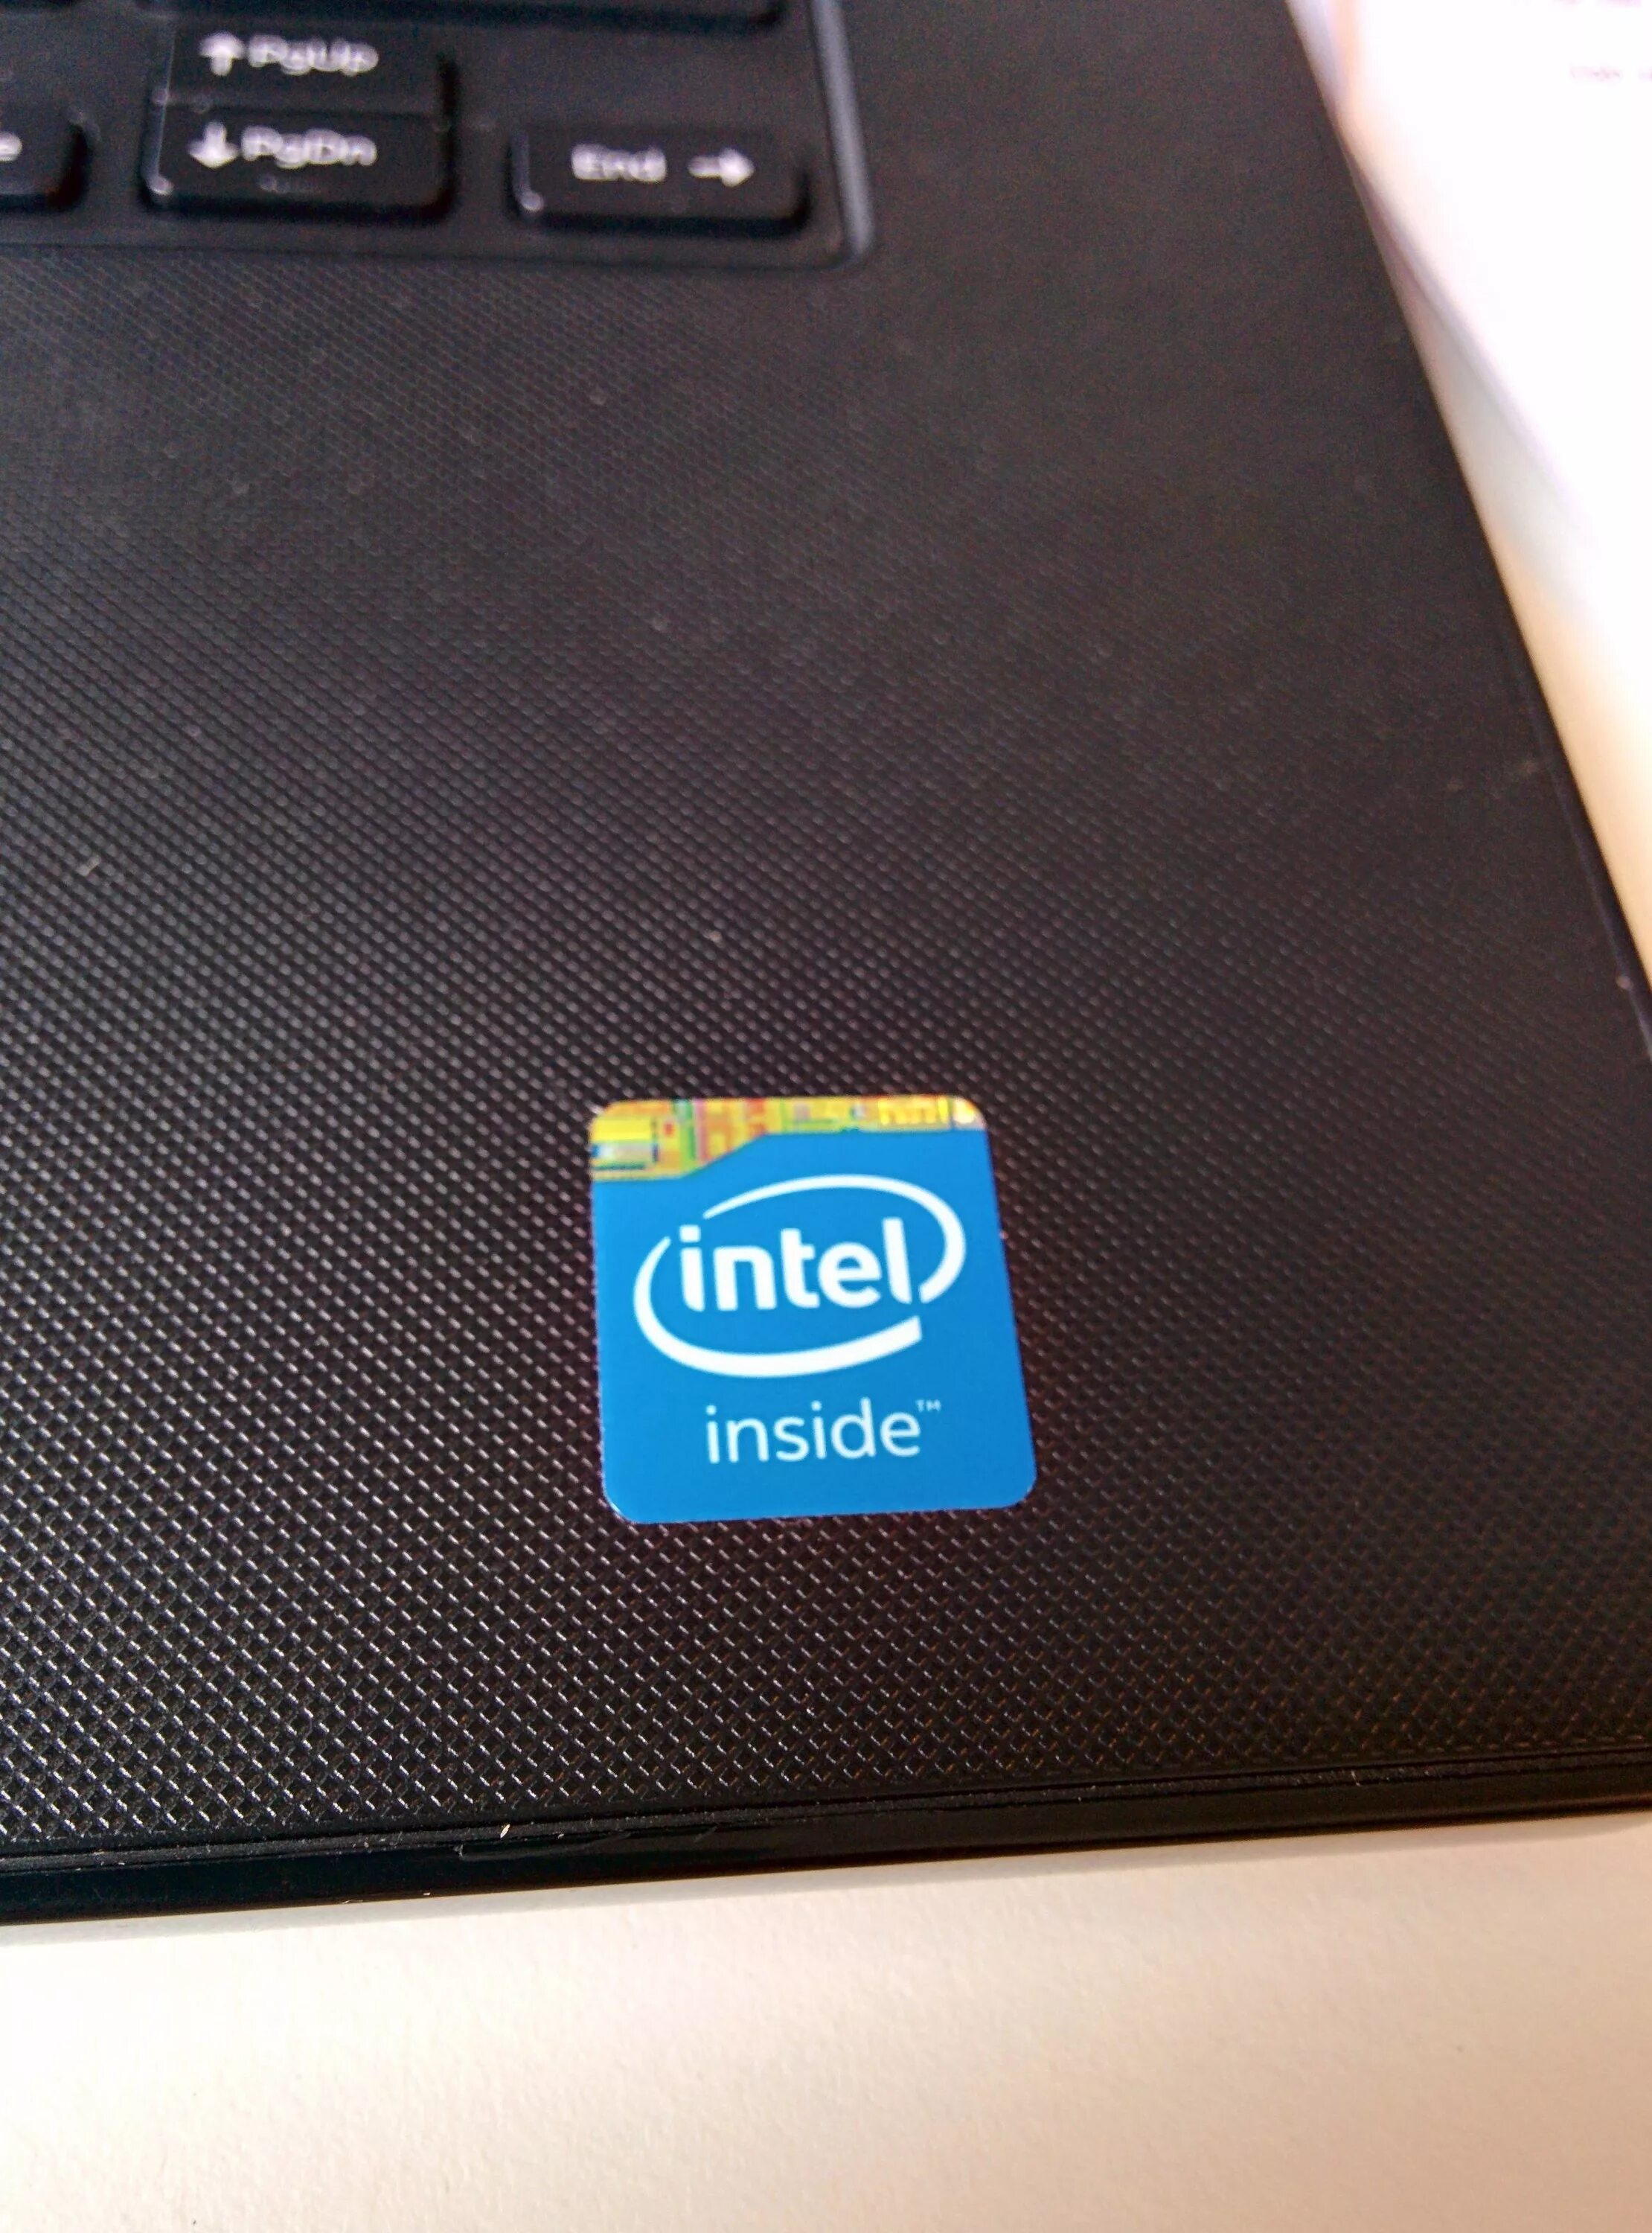 Коутбук леново Интер инсайд. Ноутбук леново Intel inside. ASUS Intel inside Core i3 HDMI. Неттоп dell Intel inside. Неттоп intel core i5